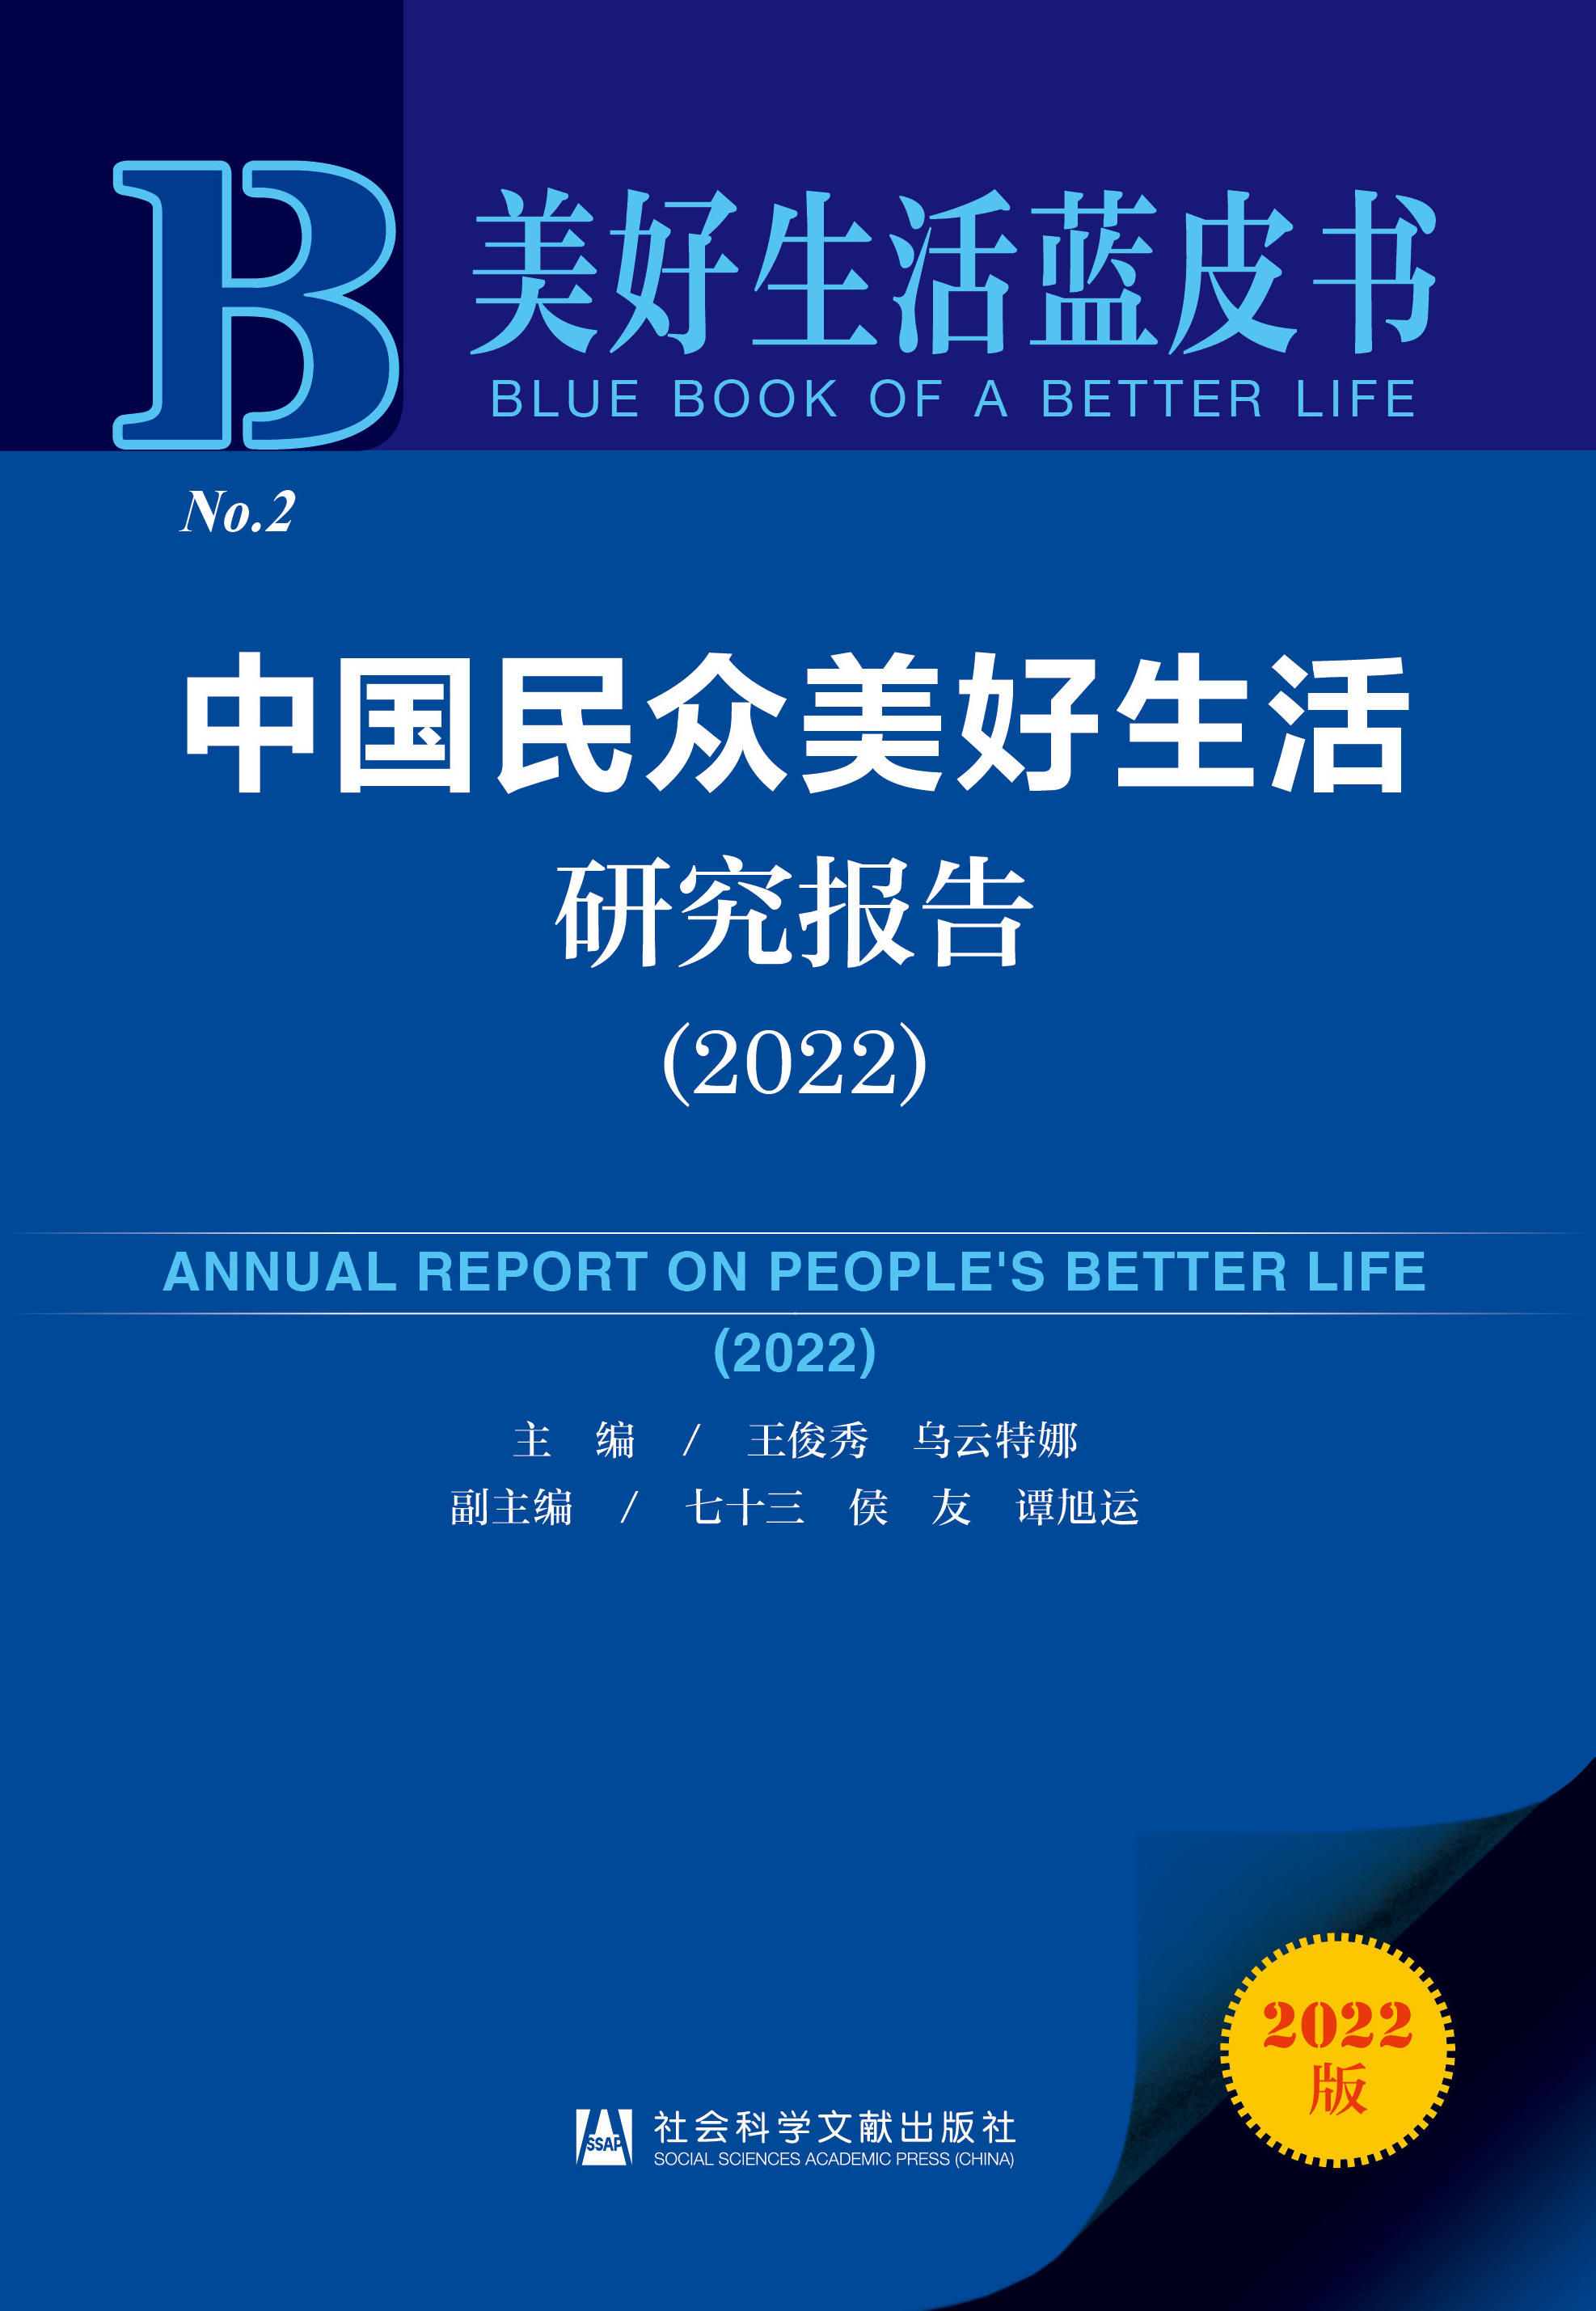 中国民众美好生活研究报告 = Annual report on people's better life. 2022 / 主编: 王俊秀, 乌云特娜 ; 副主编: 七十三, 侯友, 谭旭运